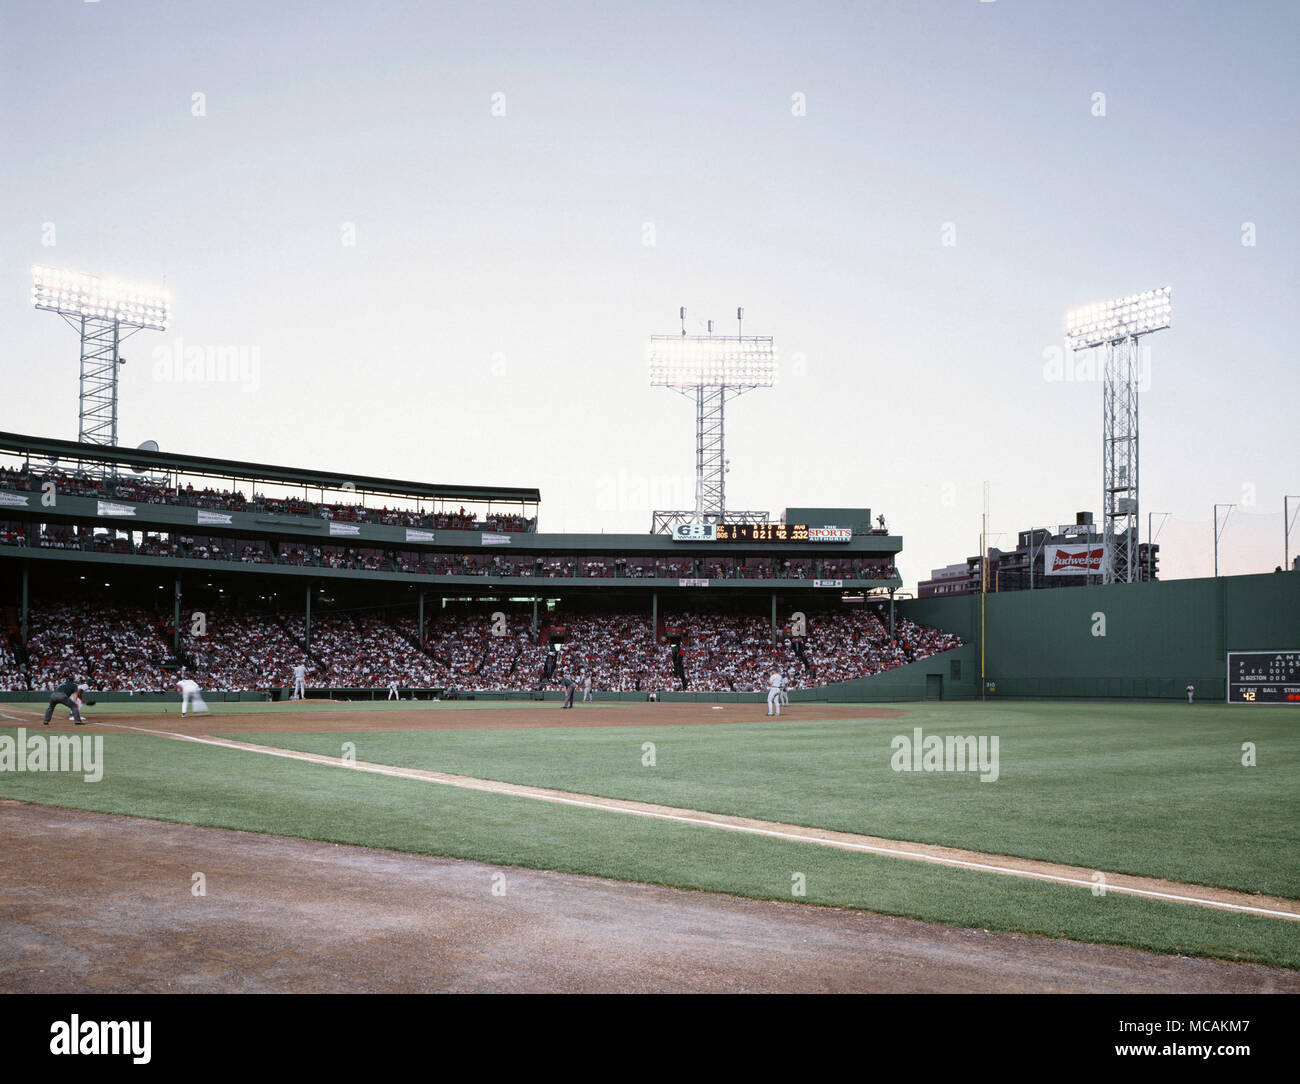 Il Fenway Park è un parco di baseball di Boston, Massachusetts, si trova a 4 Yawkey modo vicino a Kenmore Square. Essa è stata la casa dei Boston Red Sox Major League Baseball team sin dalla sua apertura nel 1912 ed è il più antico campo da baseball nella Major League Baseball Foto Stock